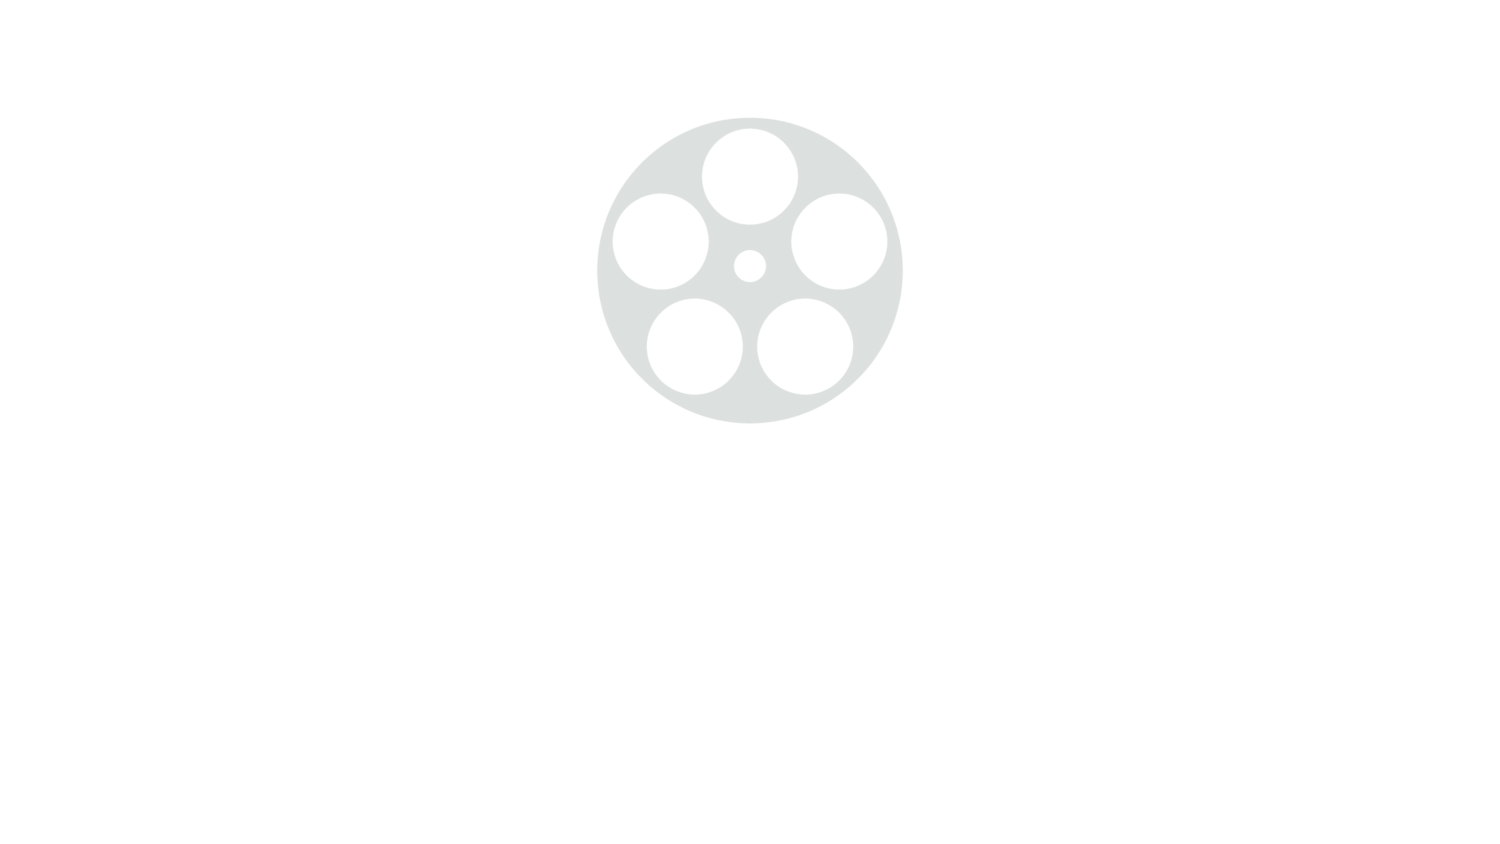 Ultimate Reels